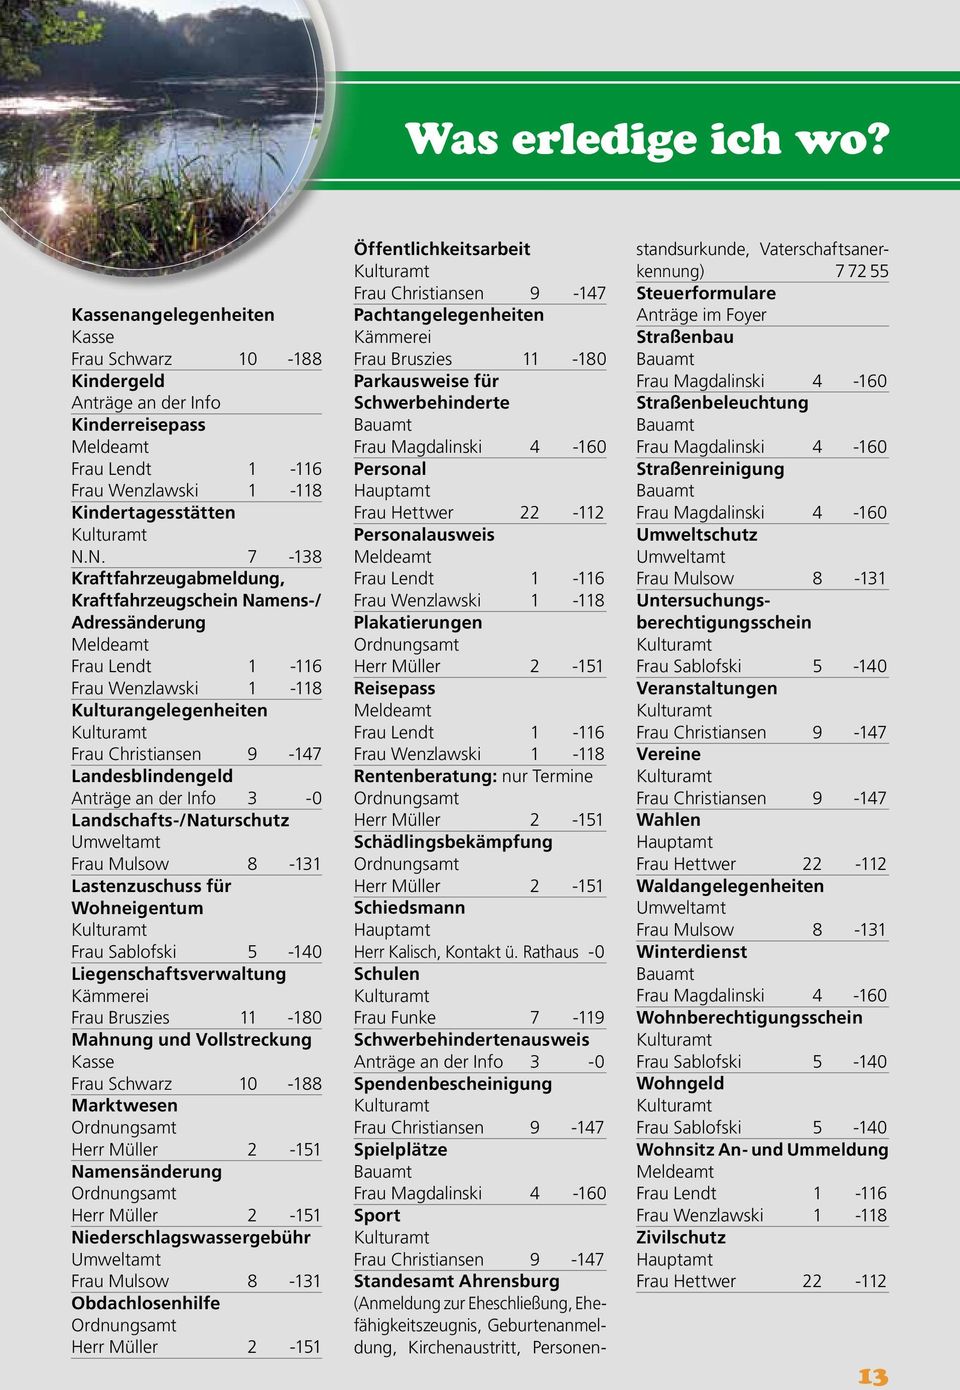 Anträge an der Info 3-0 Landschafts-/Naturschutz Umweltamt Frau Mulsow 8-131 Lastenzuschuss für Wohneigentum Kulturamt Frau Sablofski 5-140 Liegenschaftsverwaltung Kämmerei Frau Bruszies 11-180